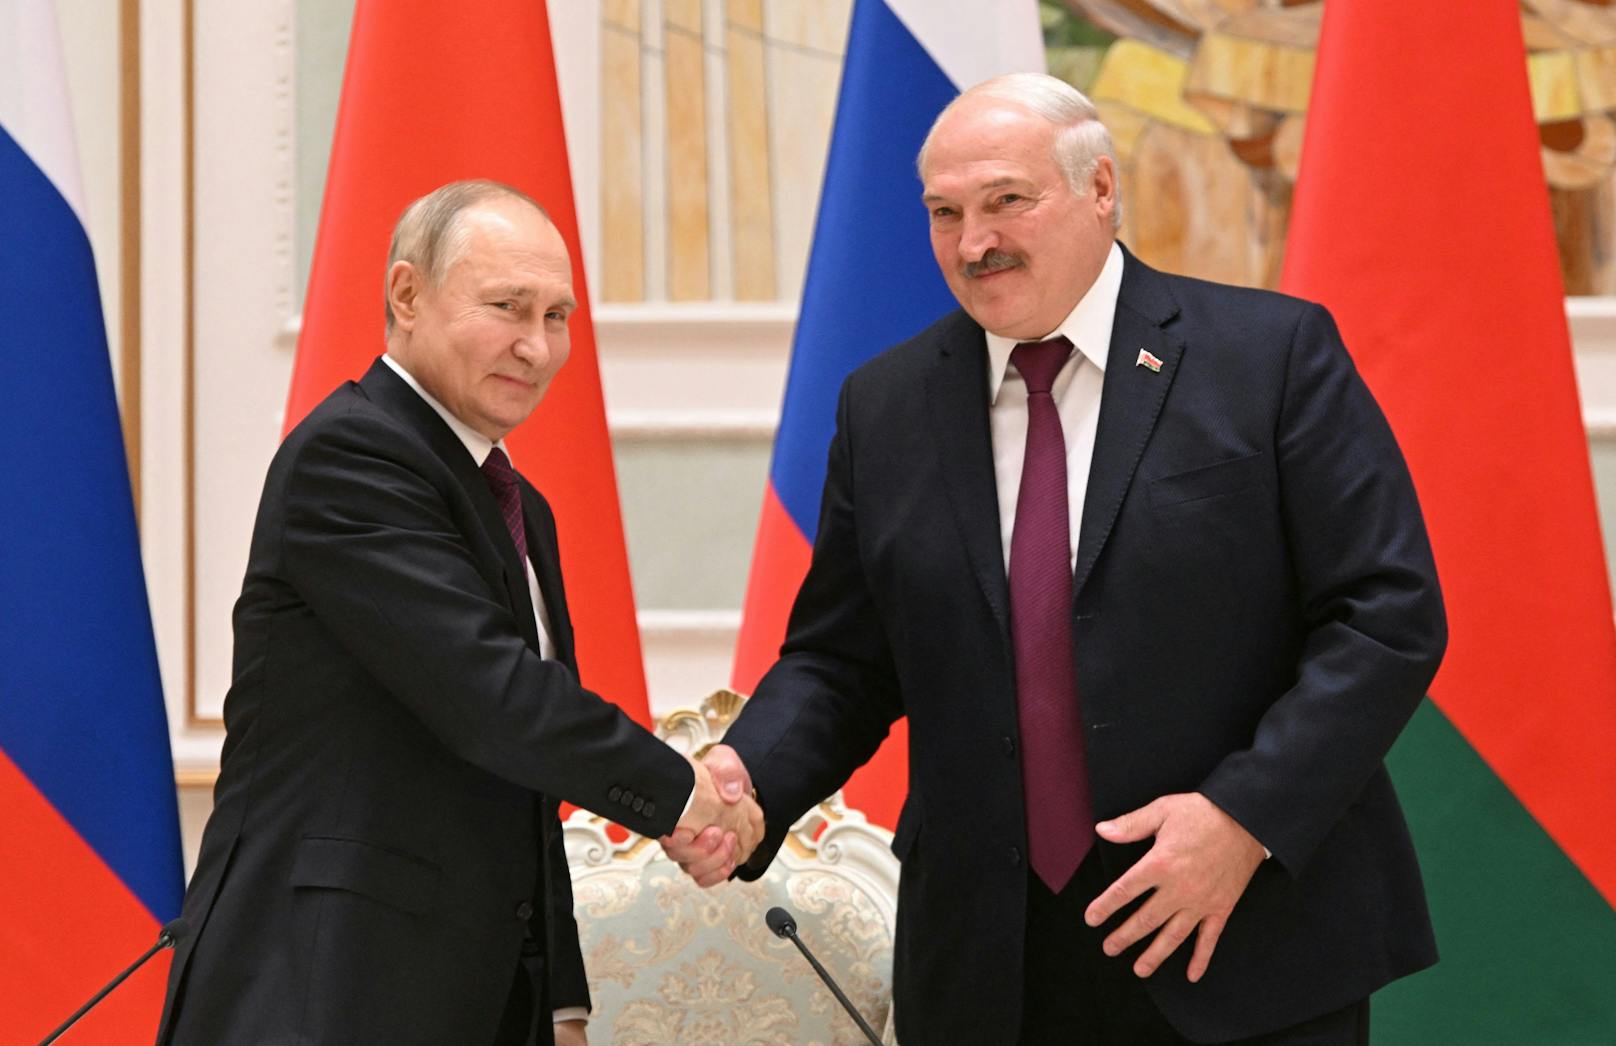 Das hat Lukaschenko aufgrund der instabilen innenpolitischen Lage in seinem Land bislang auch erfolgreich vermieden.